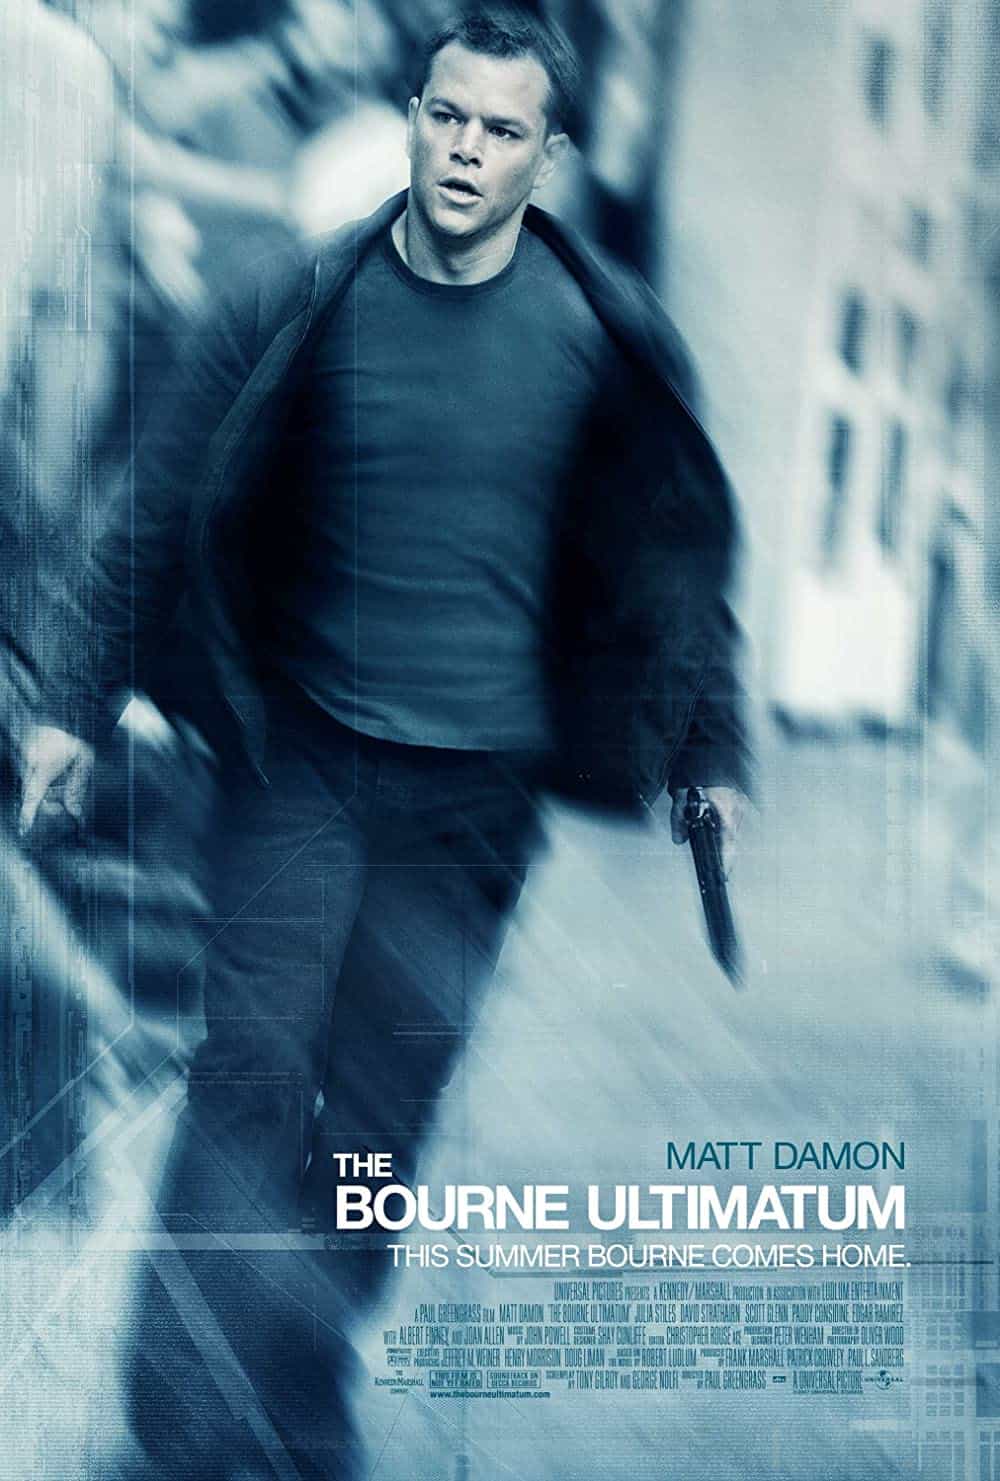 The Bourne Ultimatum (2007) Best Matt Damon Movies (Ranked)